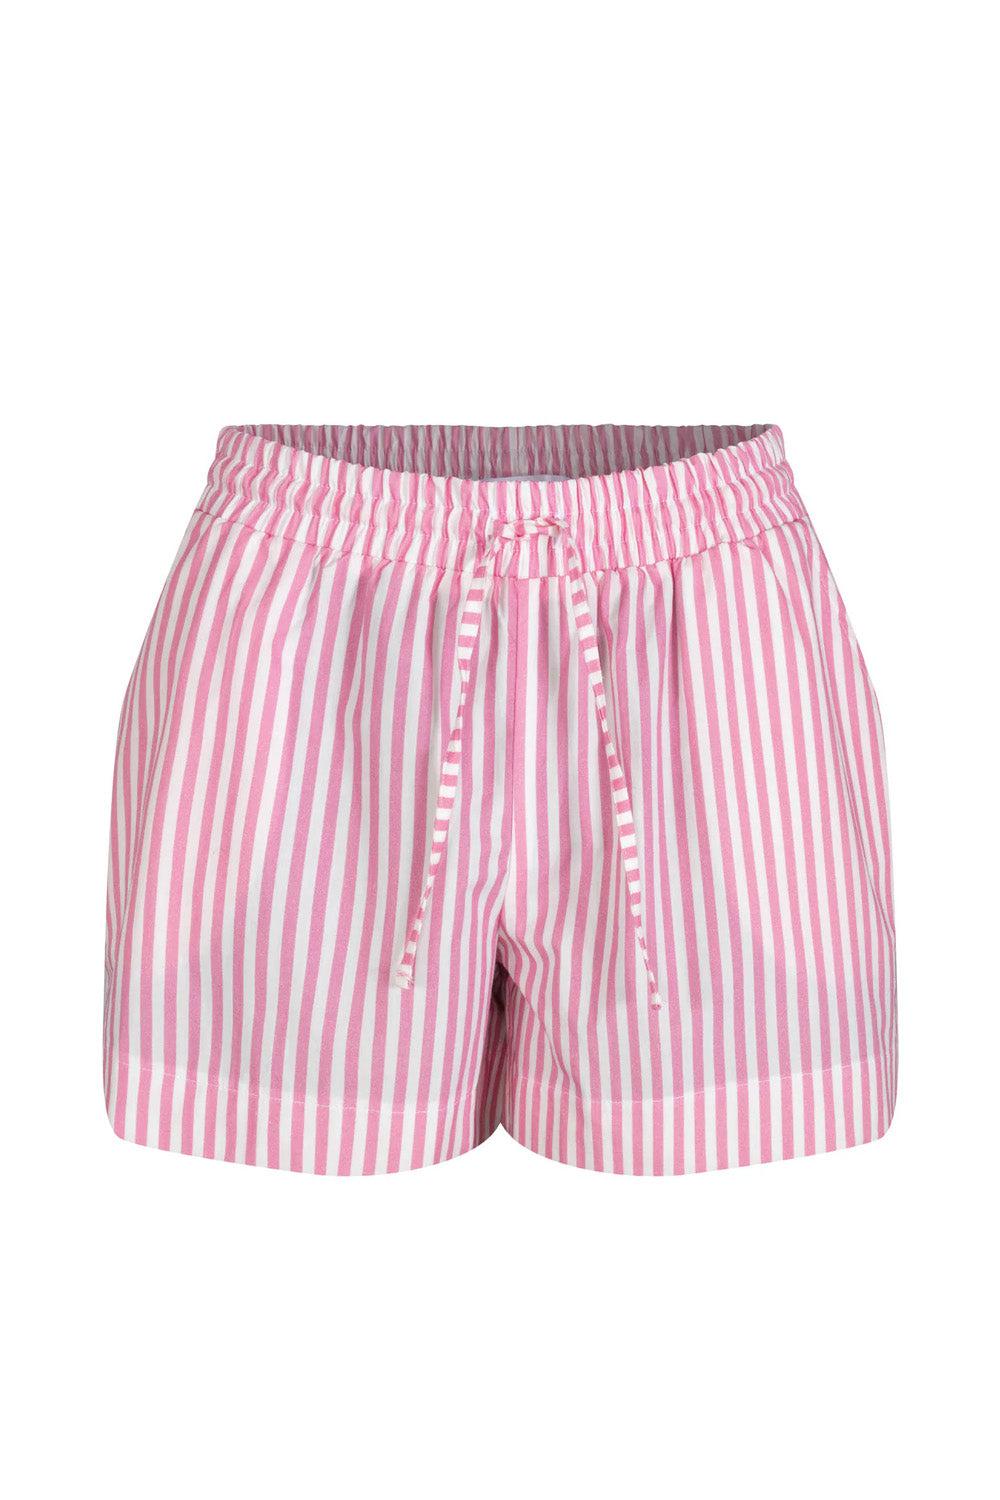 Jamie Shorts Pink Stripe